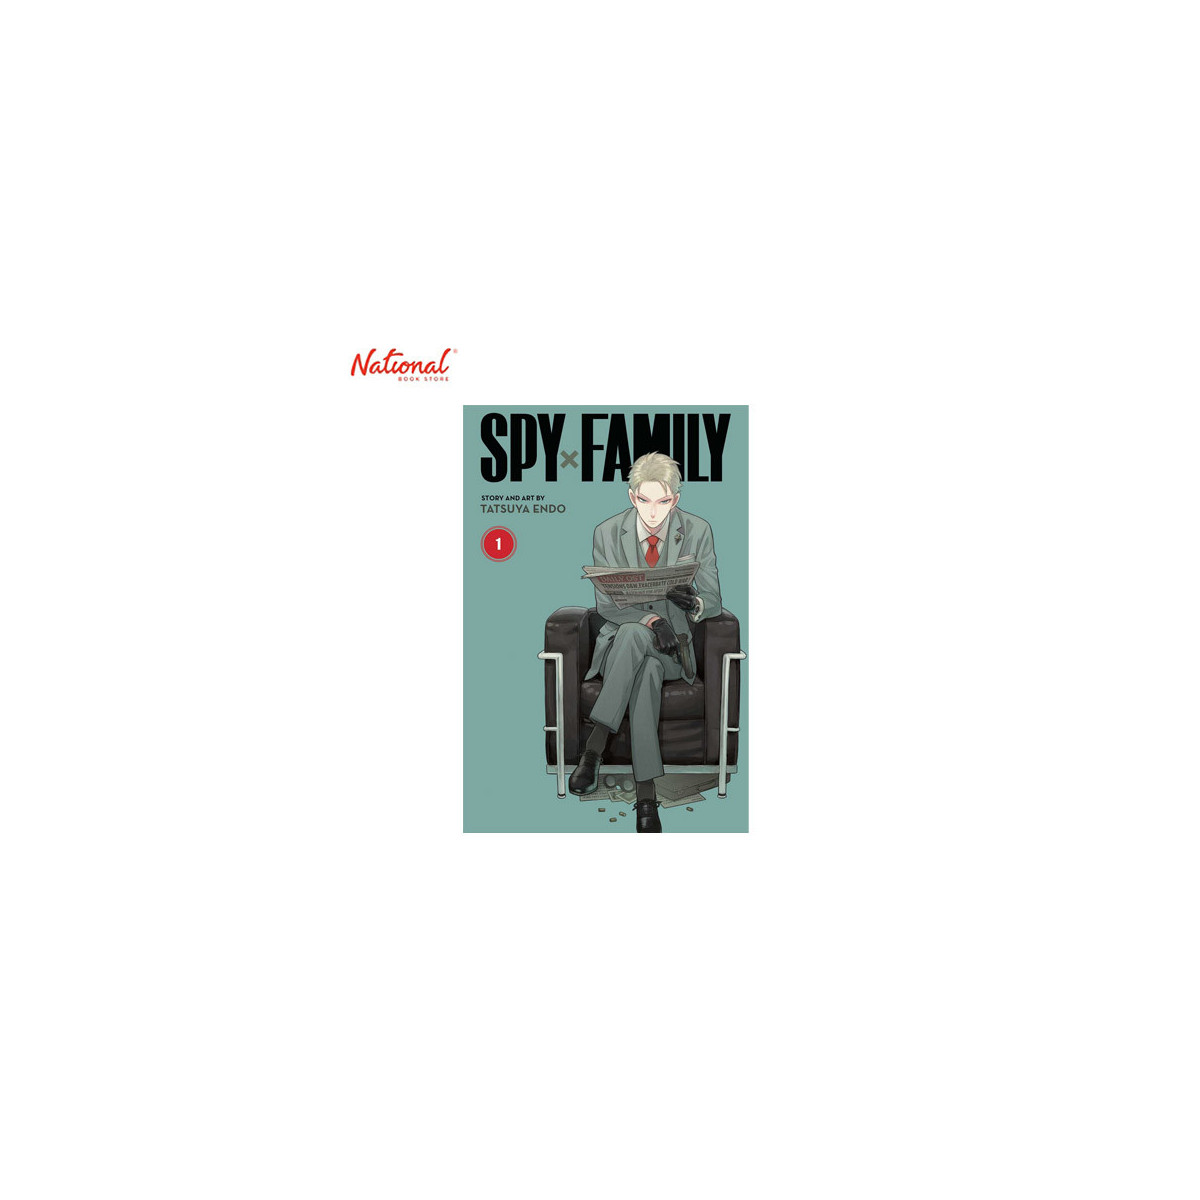 Spy X Family Volume 1 Trade Paperback by Tatsuya Endo